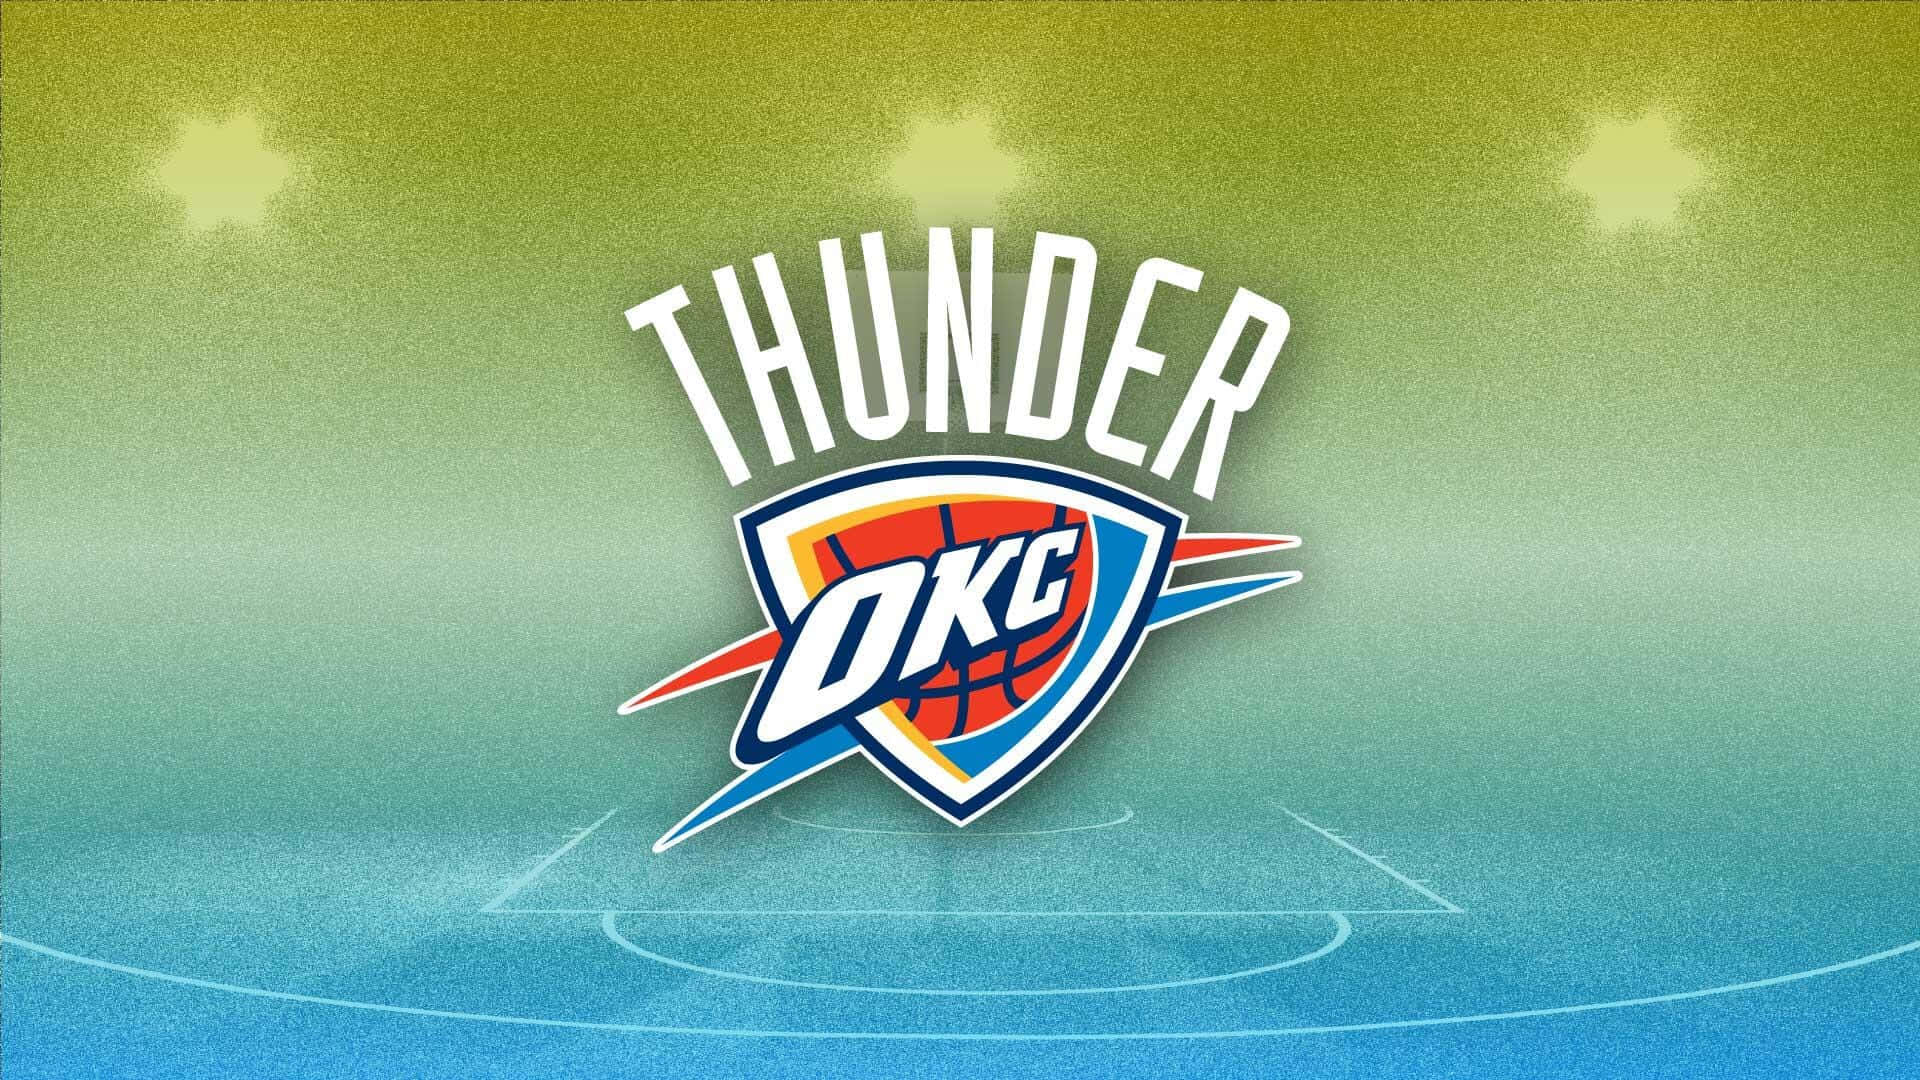 Oklahoma City Thunders OKC Team Logo og navn Wallpaper Wallpaper